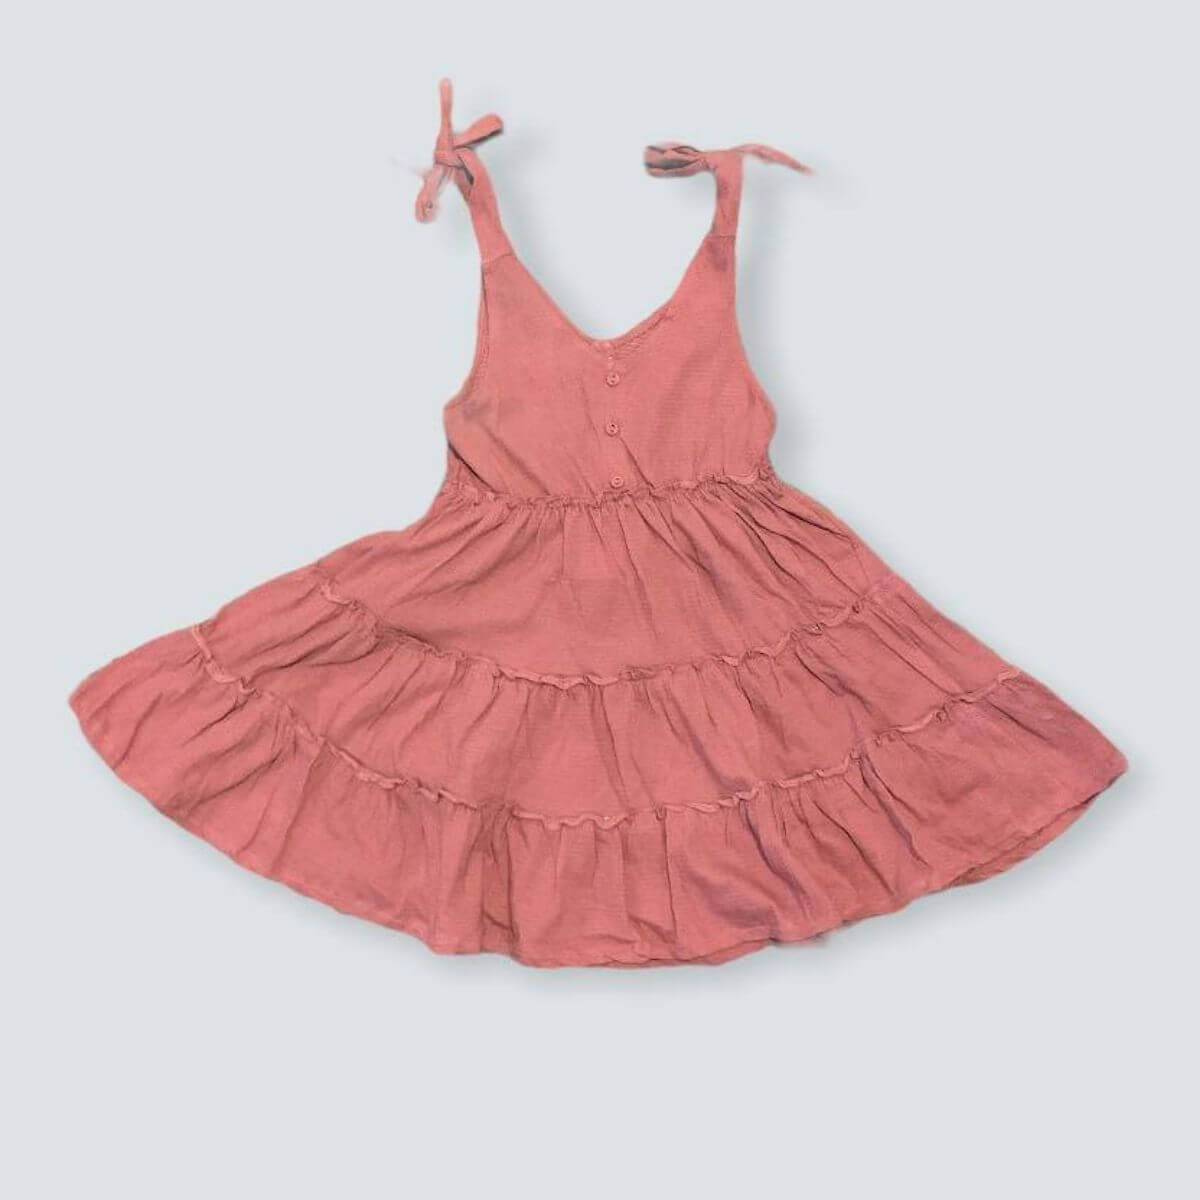 Organic Kid Tiered Dress - Dusty Pink